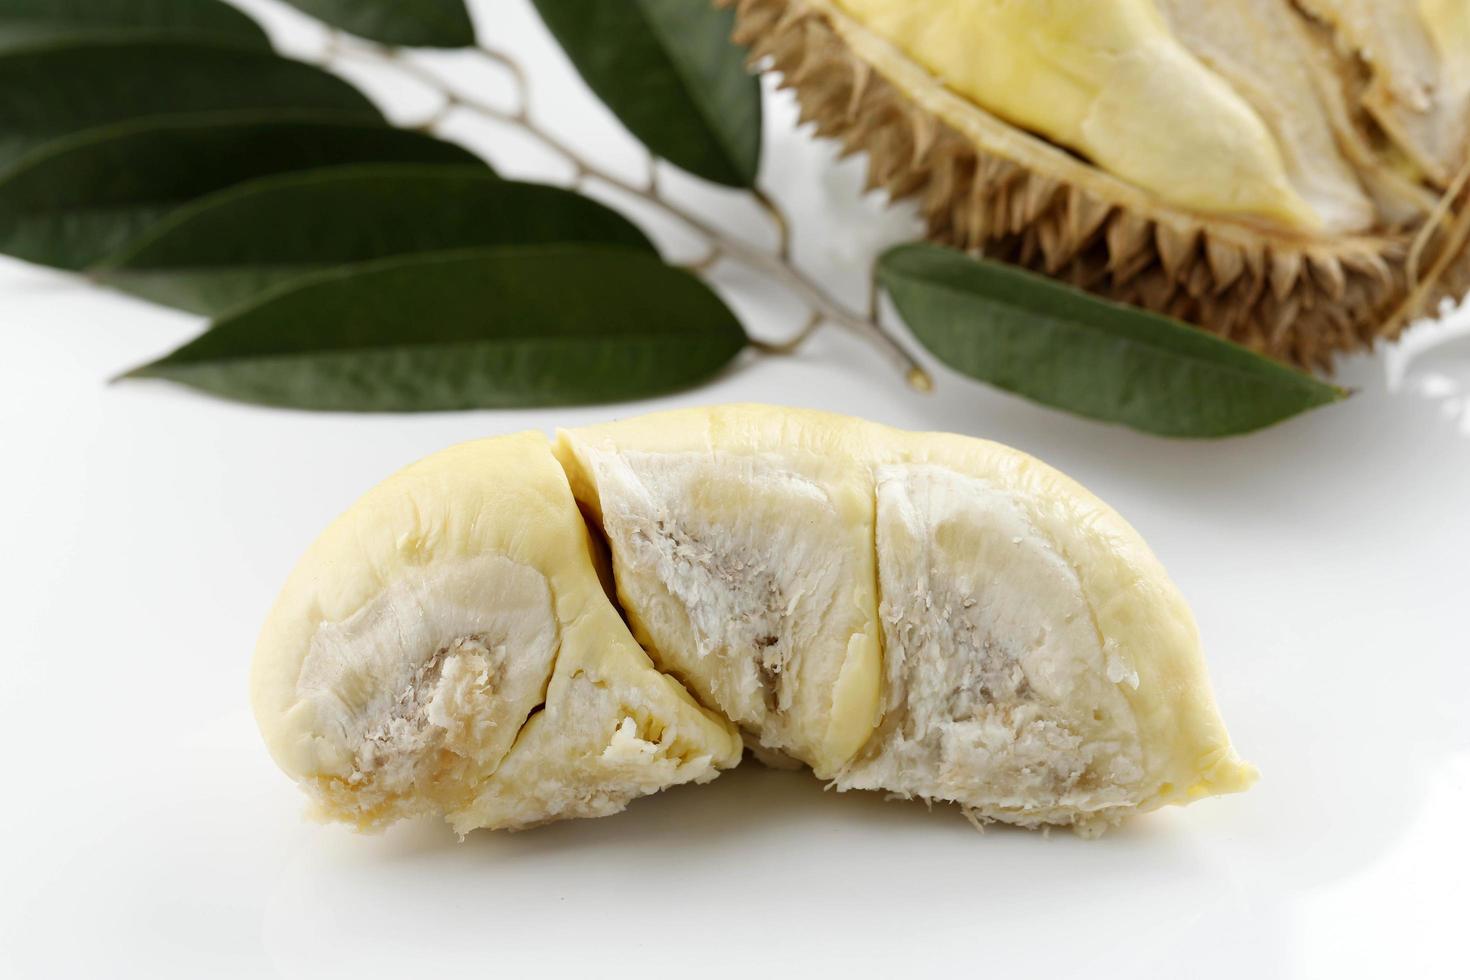 seizoensgebonden durian koning van fruit montong thailand, rijpe durian. smakelijke durian die is geschild? foto